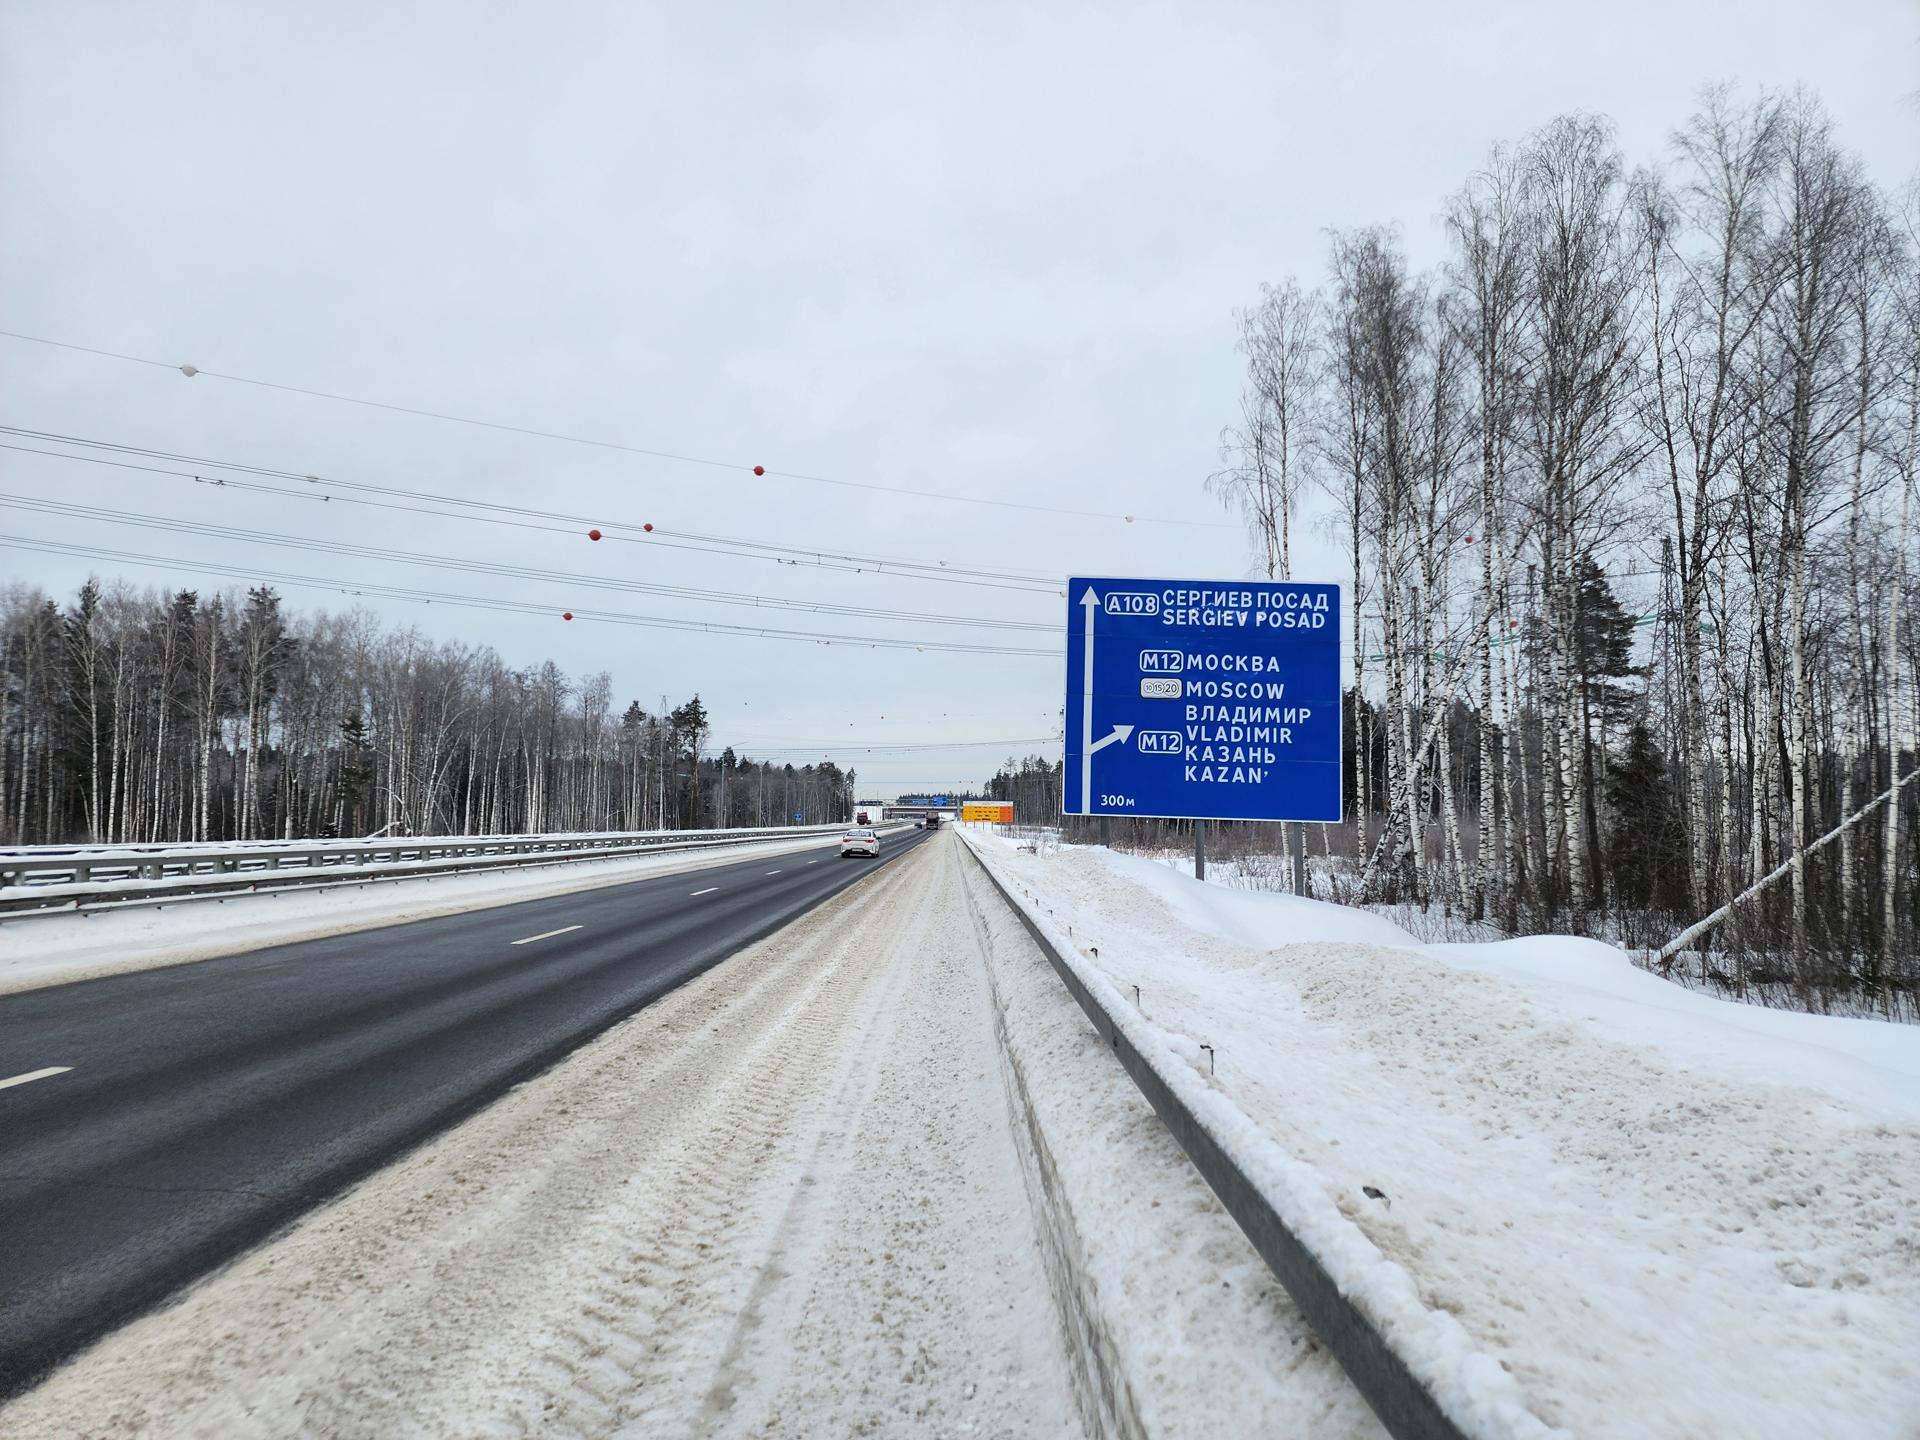 Время в пути из Электростали до Казани существенно сократилось благодаря открытию новой скоростной трассы